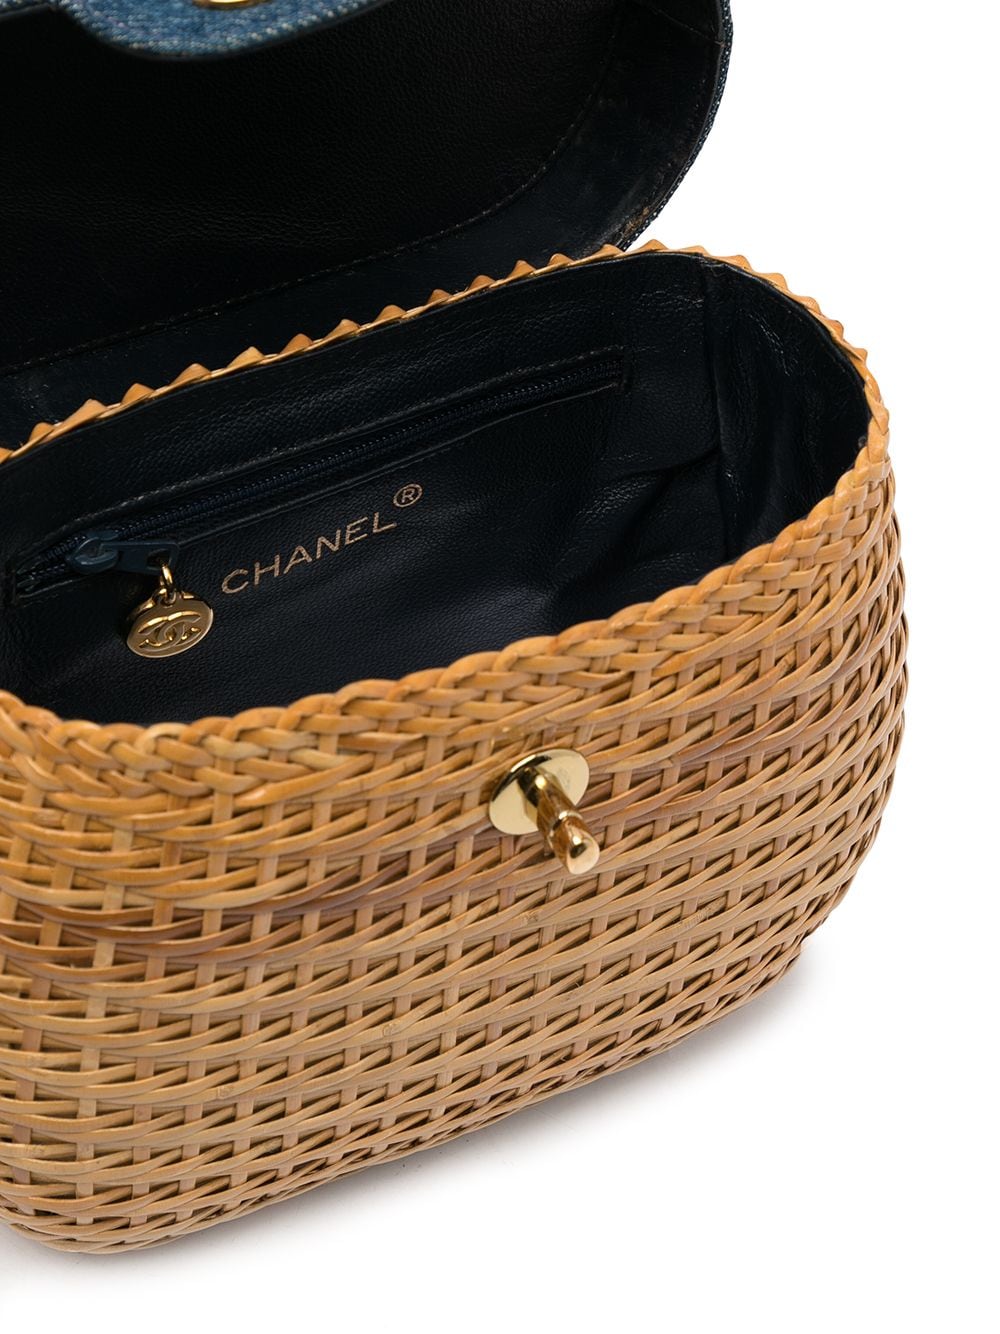 Chanel Pre-Owned 1998 CC woven basket shoulder bag